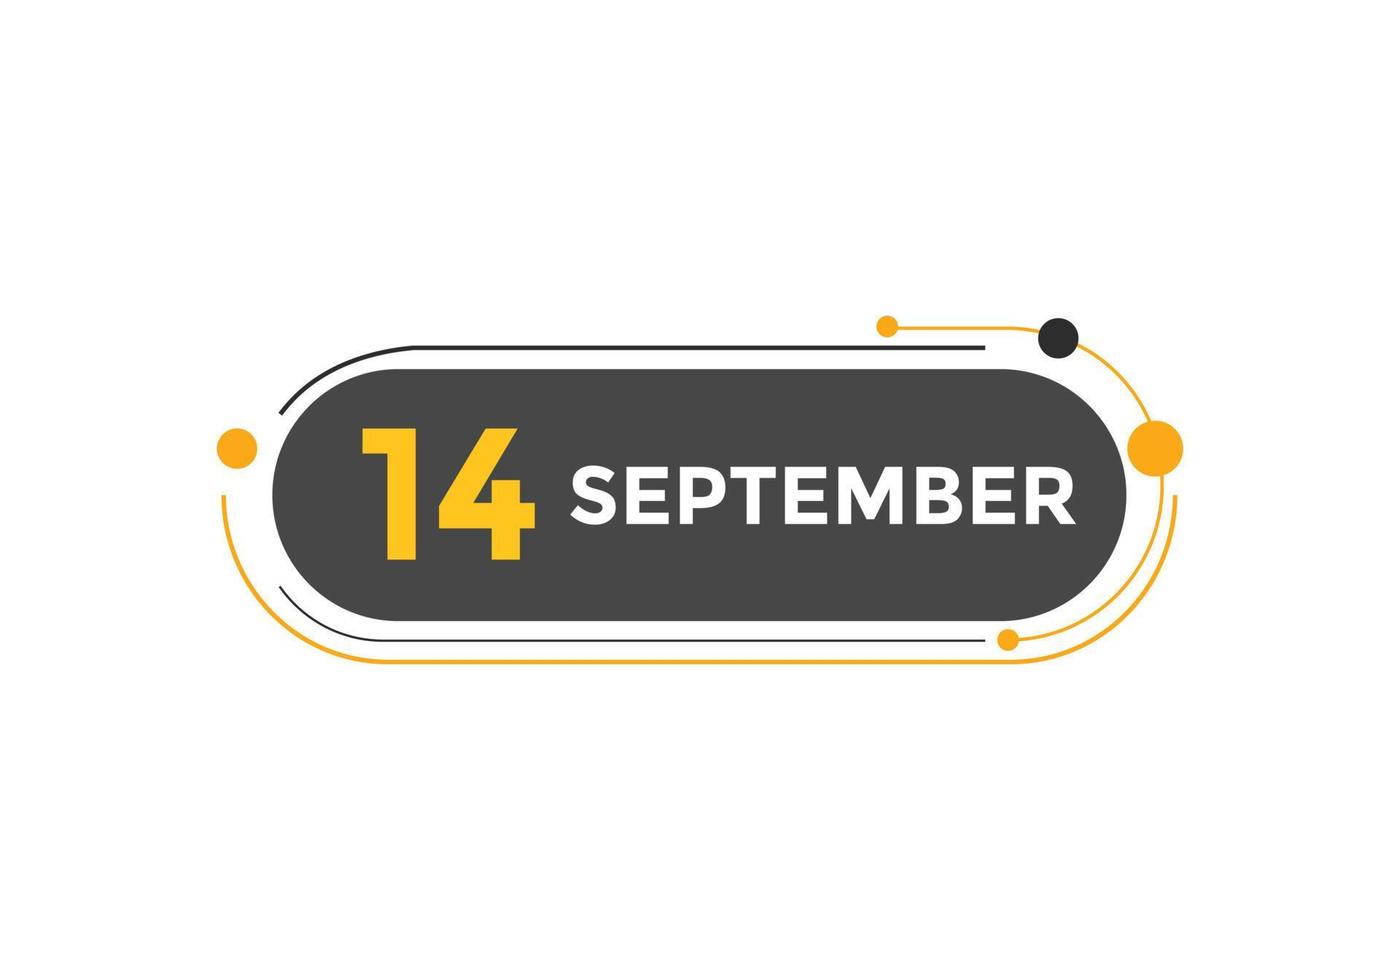 Recordatorio del calendario del 14 de septiembre. Plantilla de icono de calendario diario del 14 de septiembre. plantilla de diseño de icono de calendario 14 de septiembre. ilustración vectorial vector